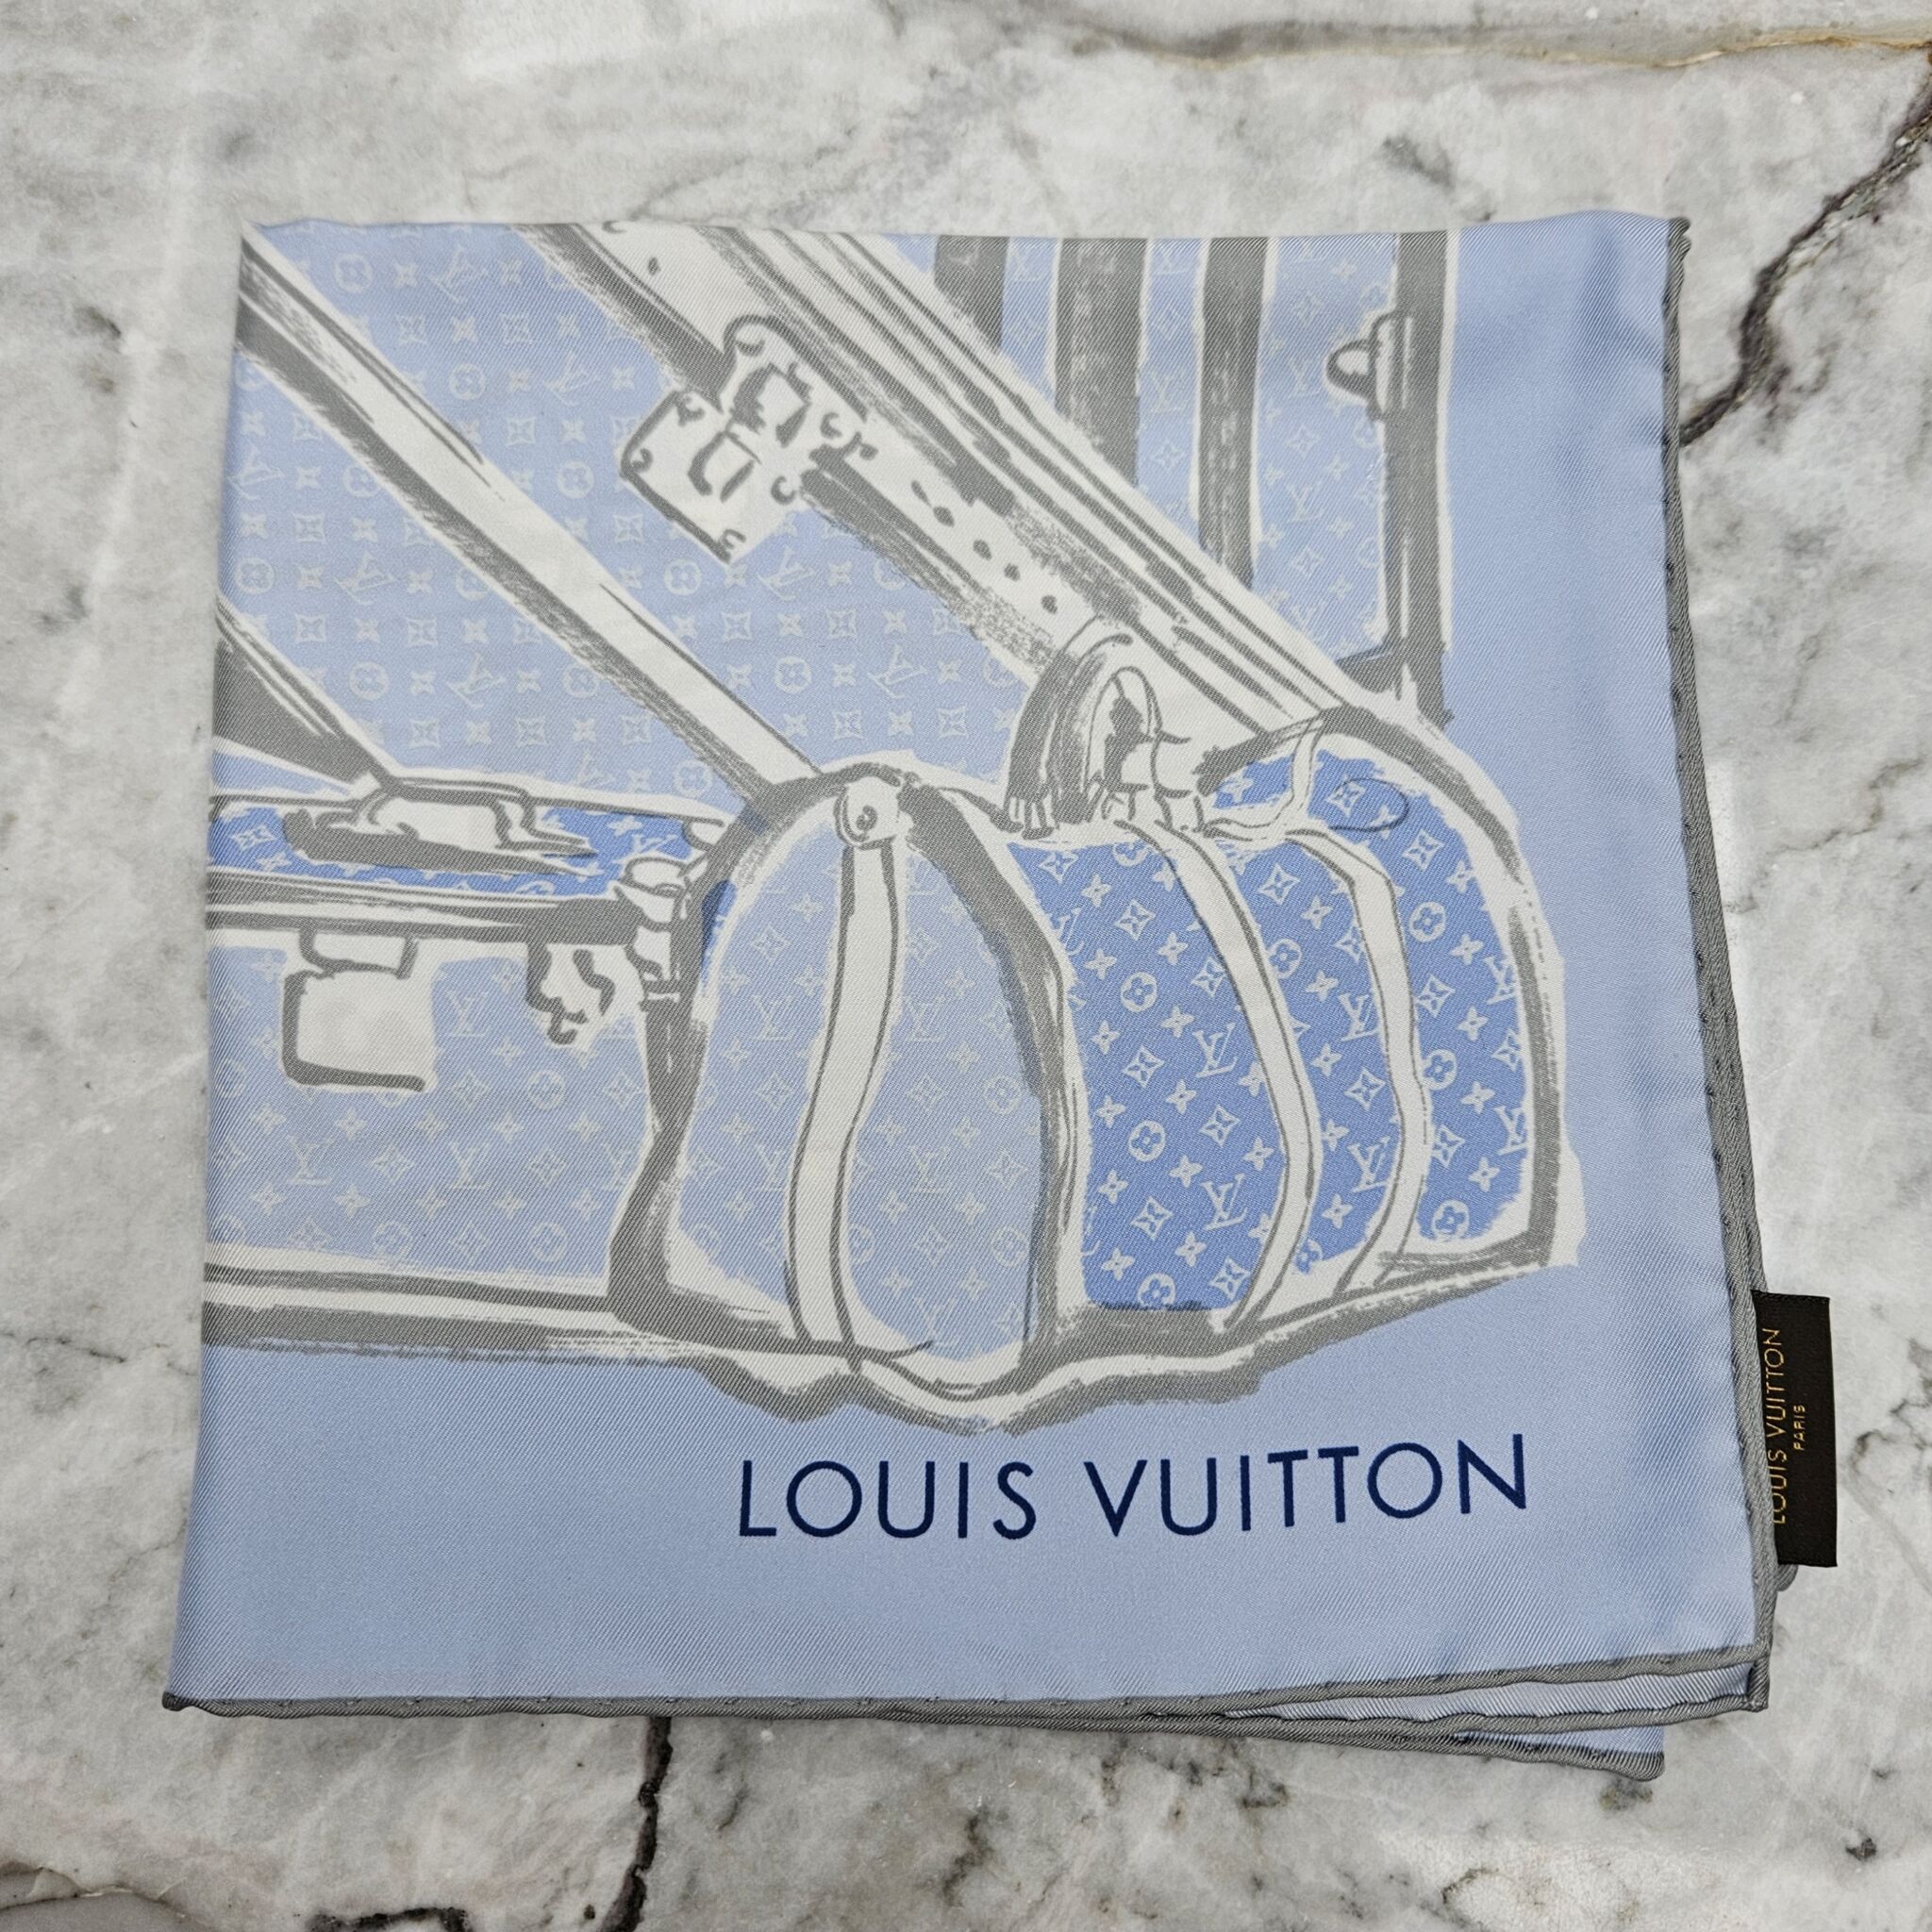 Vintage Louis Vuitton Trunks Bandeau